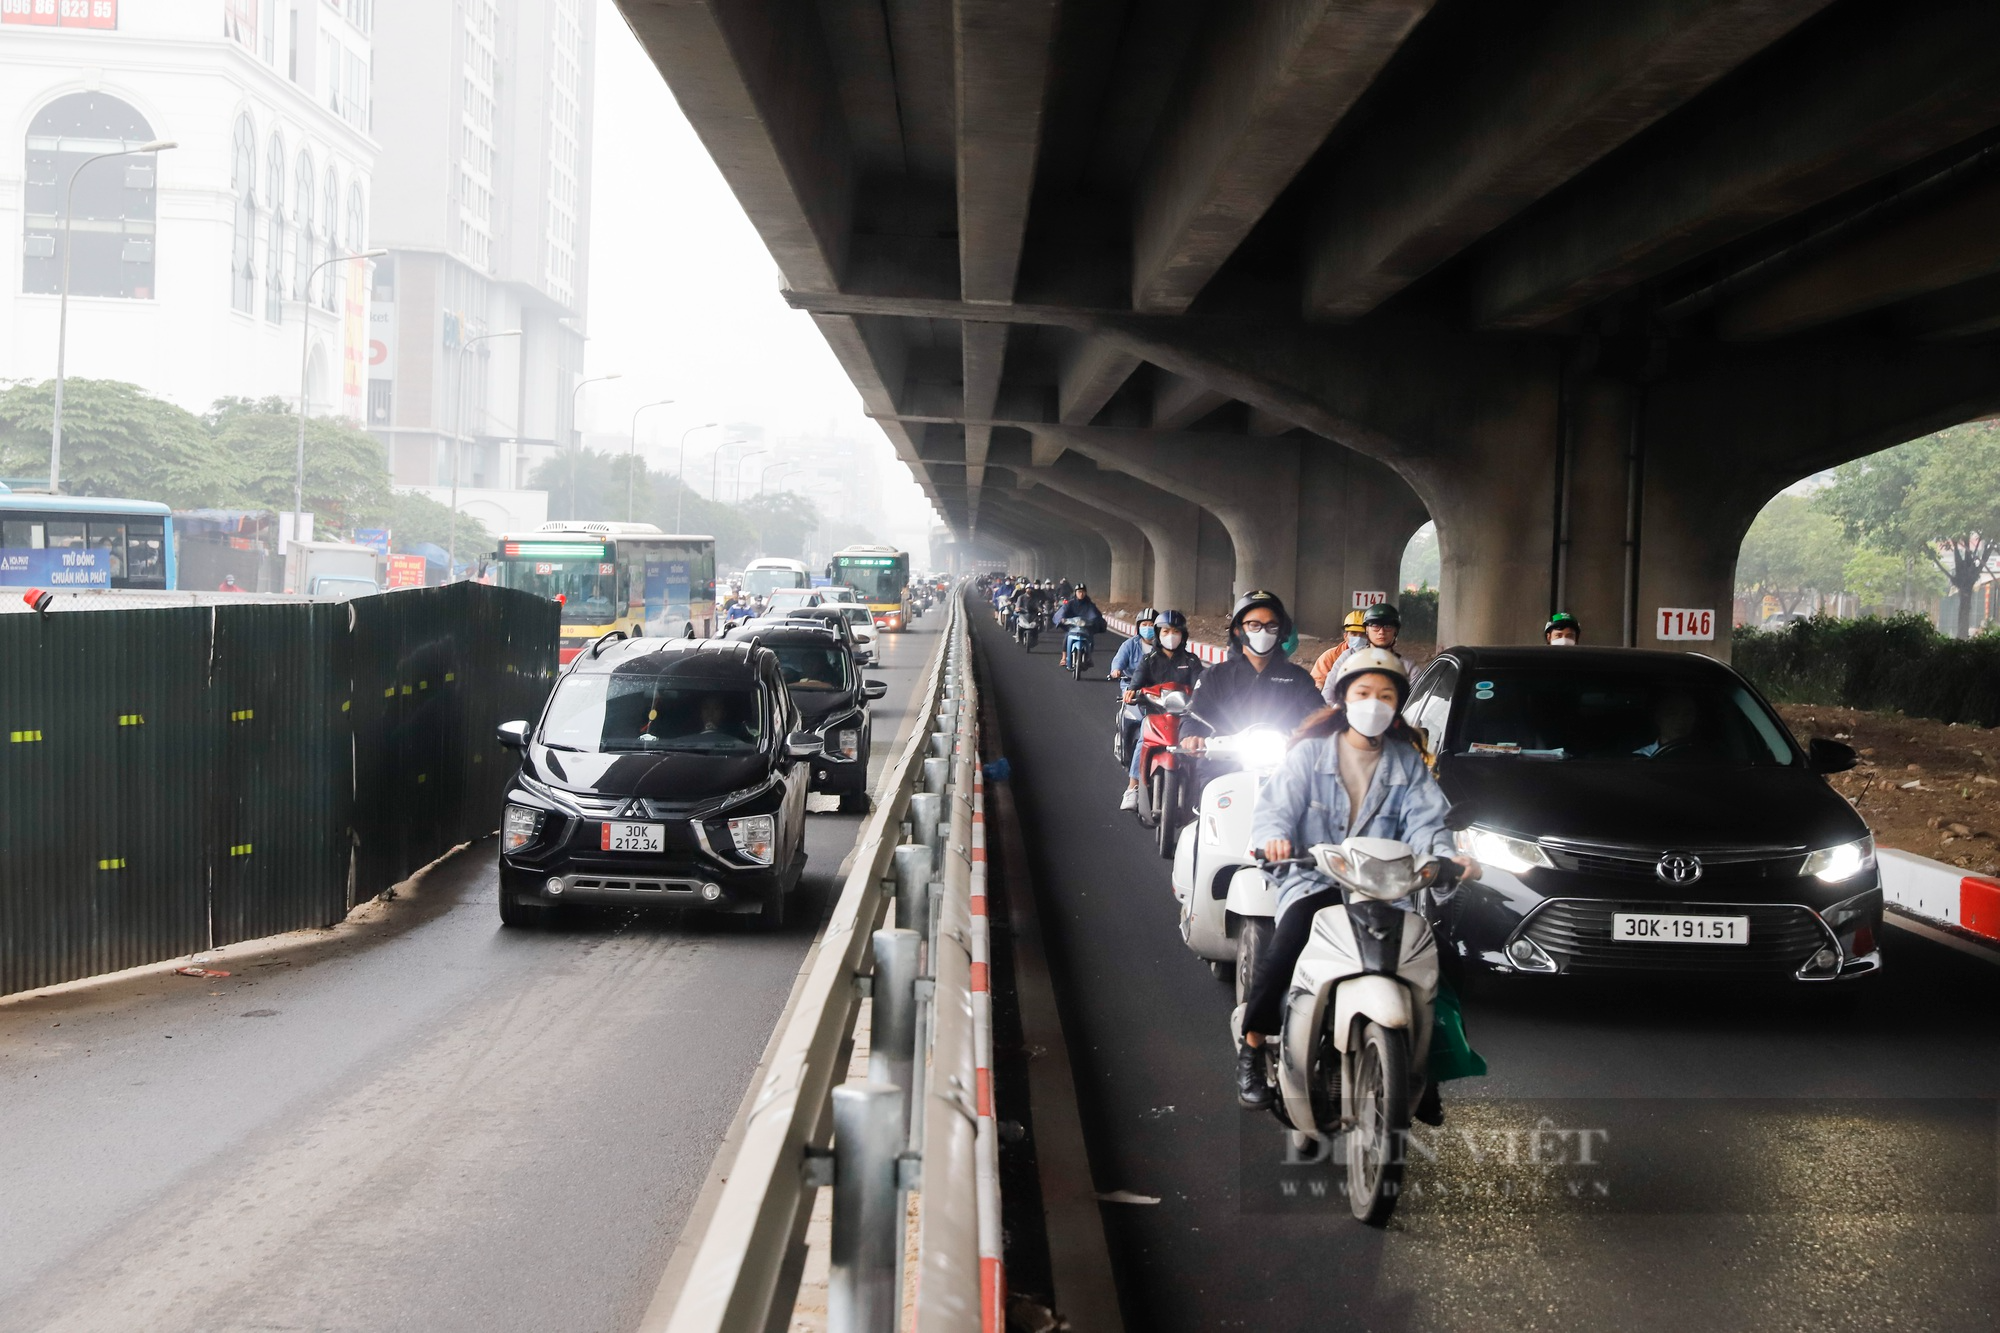 Hàng đoàn xe máy ùn ùn đi ngược chiều tại đoạn đường mới mở tại Hà Nội - Ảnh 1.